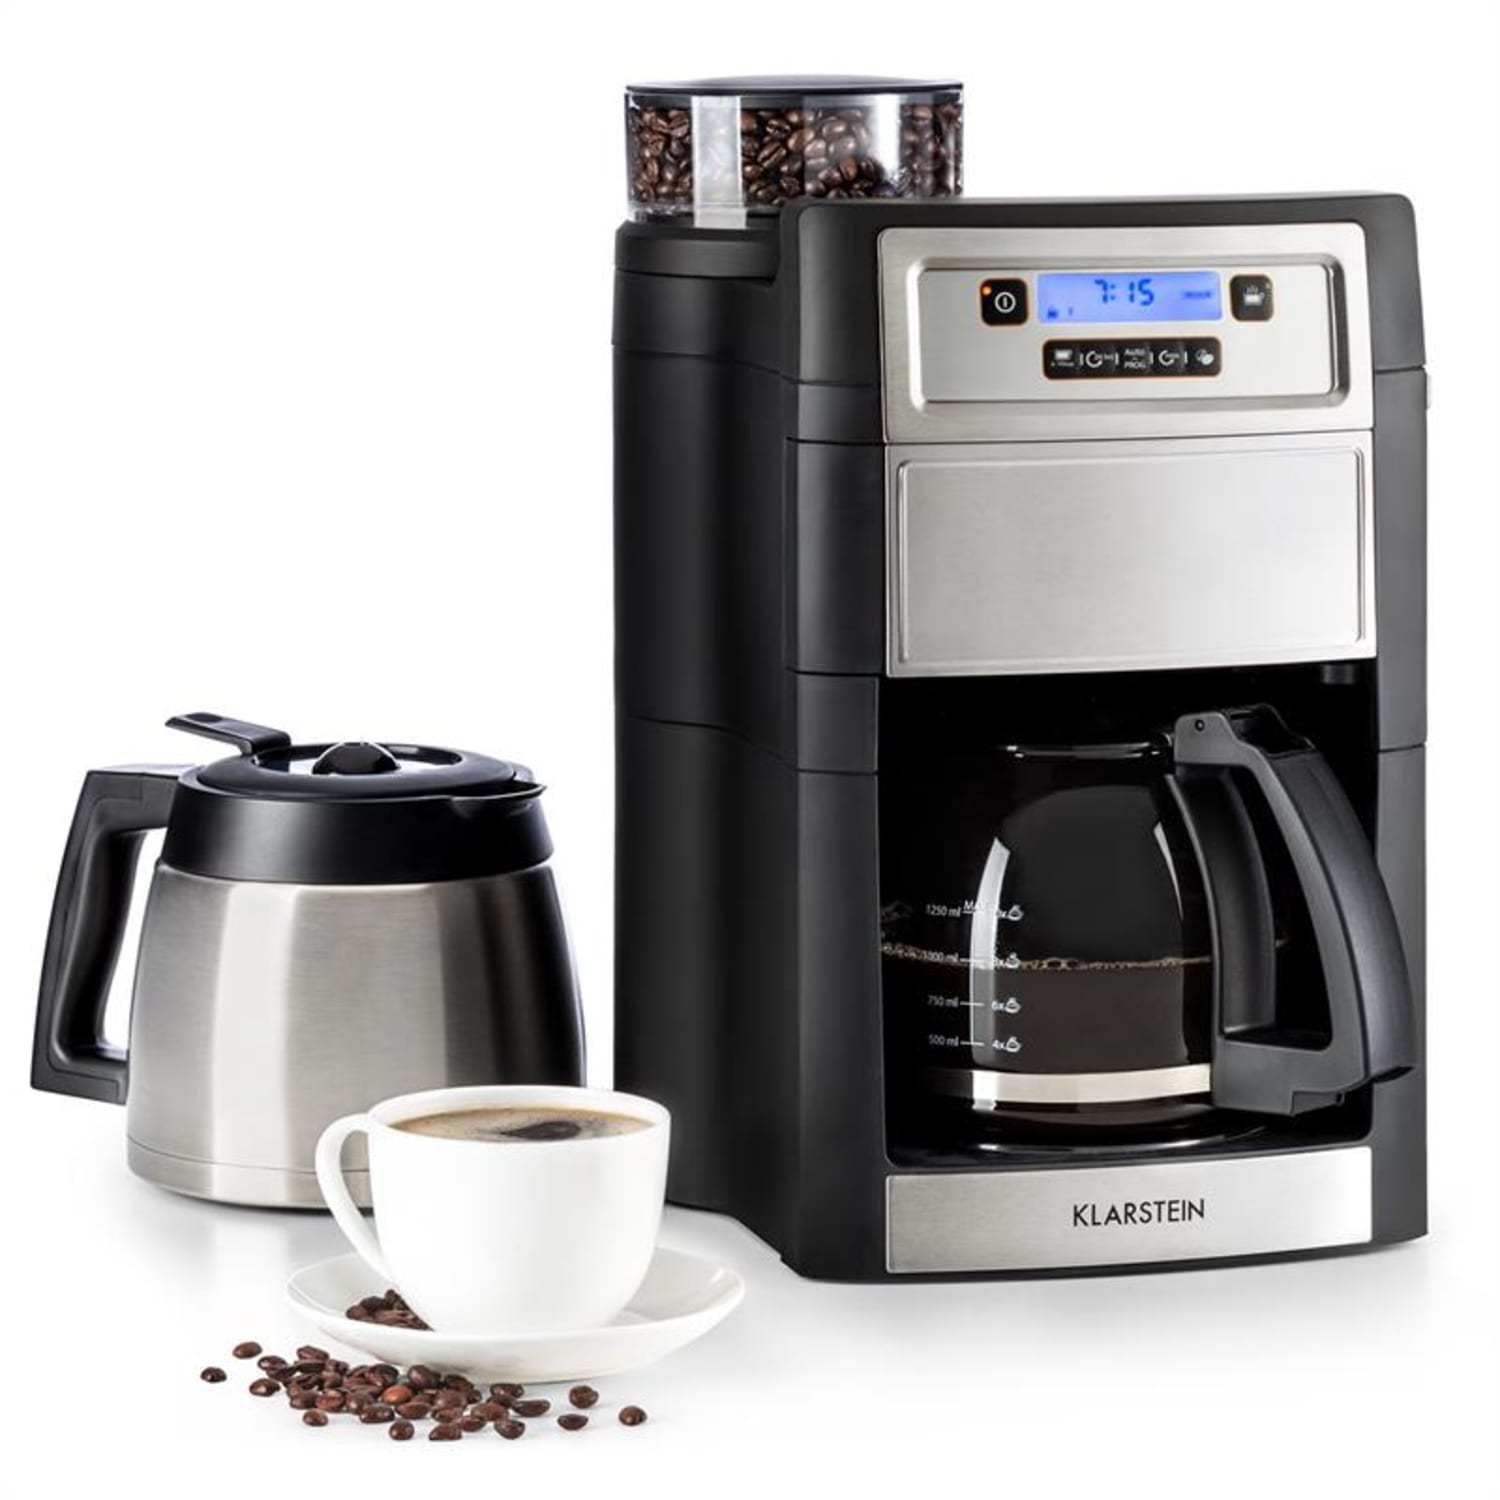 Machine à café américaine Makita DCM501Z